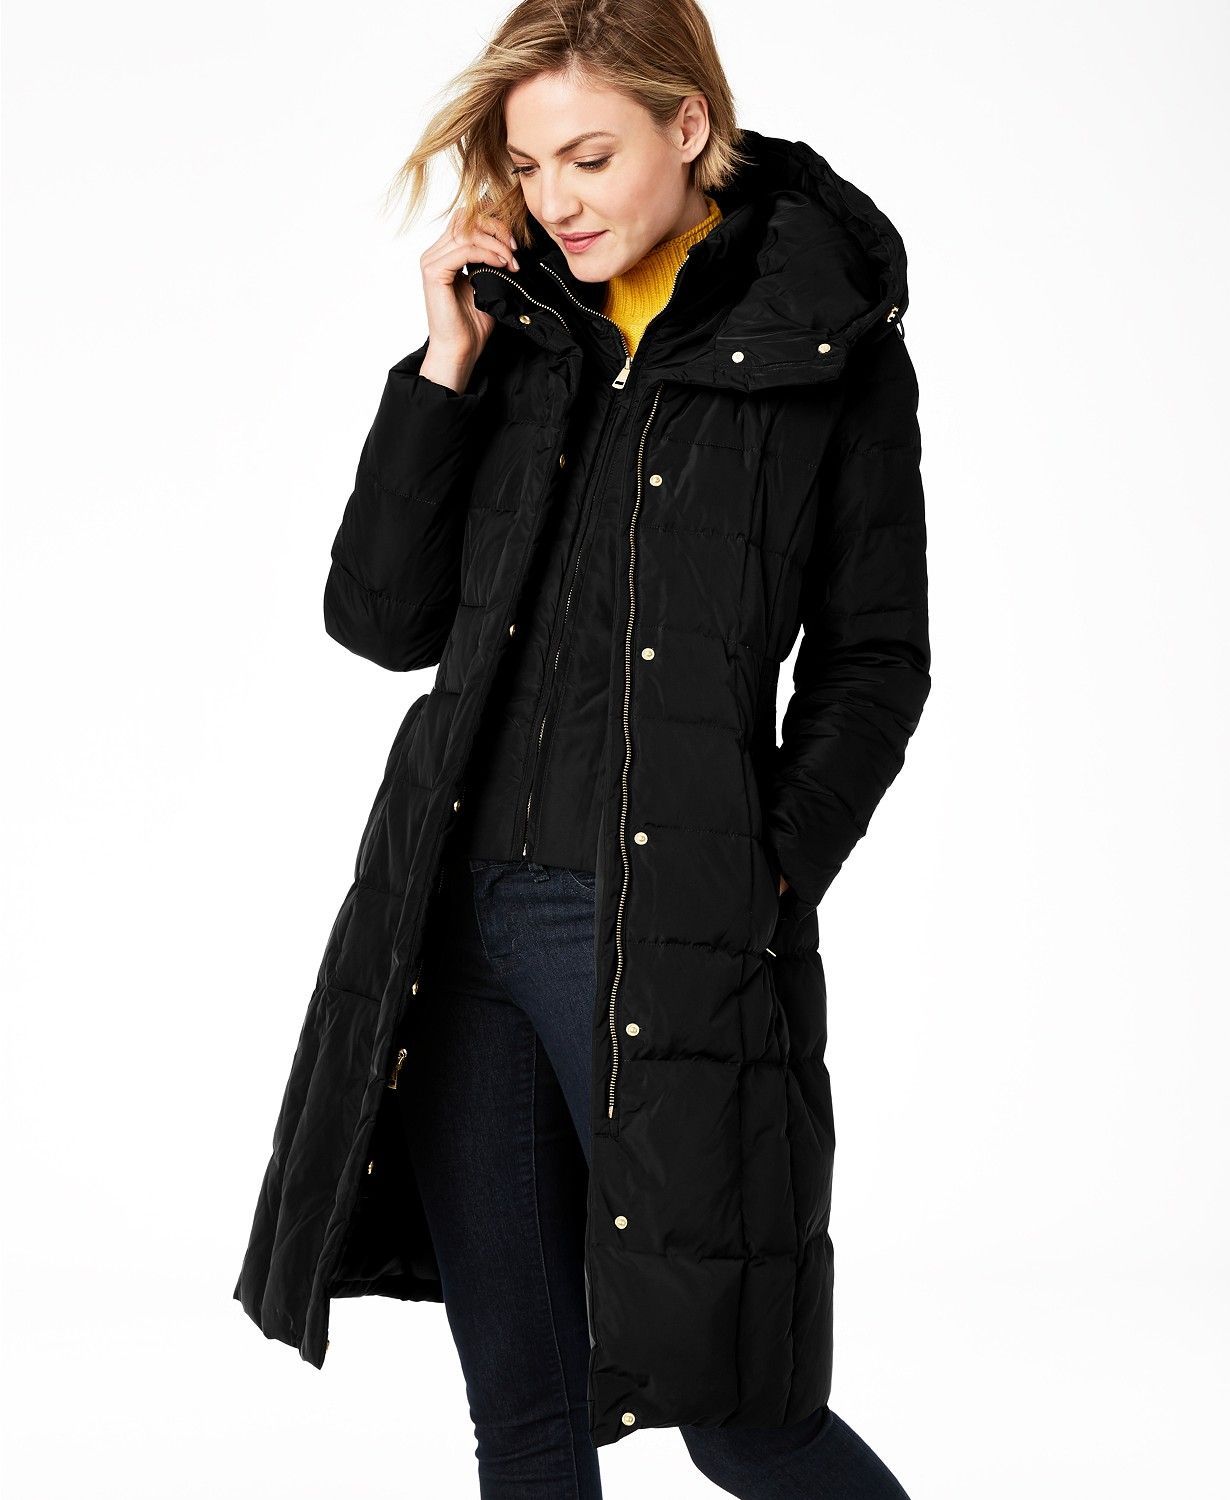 Women Coats Plus Size Winter Warm Long Coat Fur Collar Hooded Down Jacket Winter Parka Outwear Overcoat Tops 